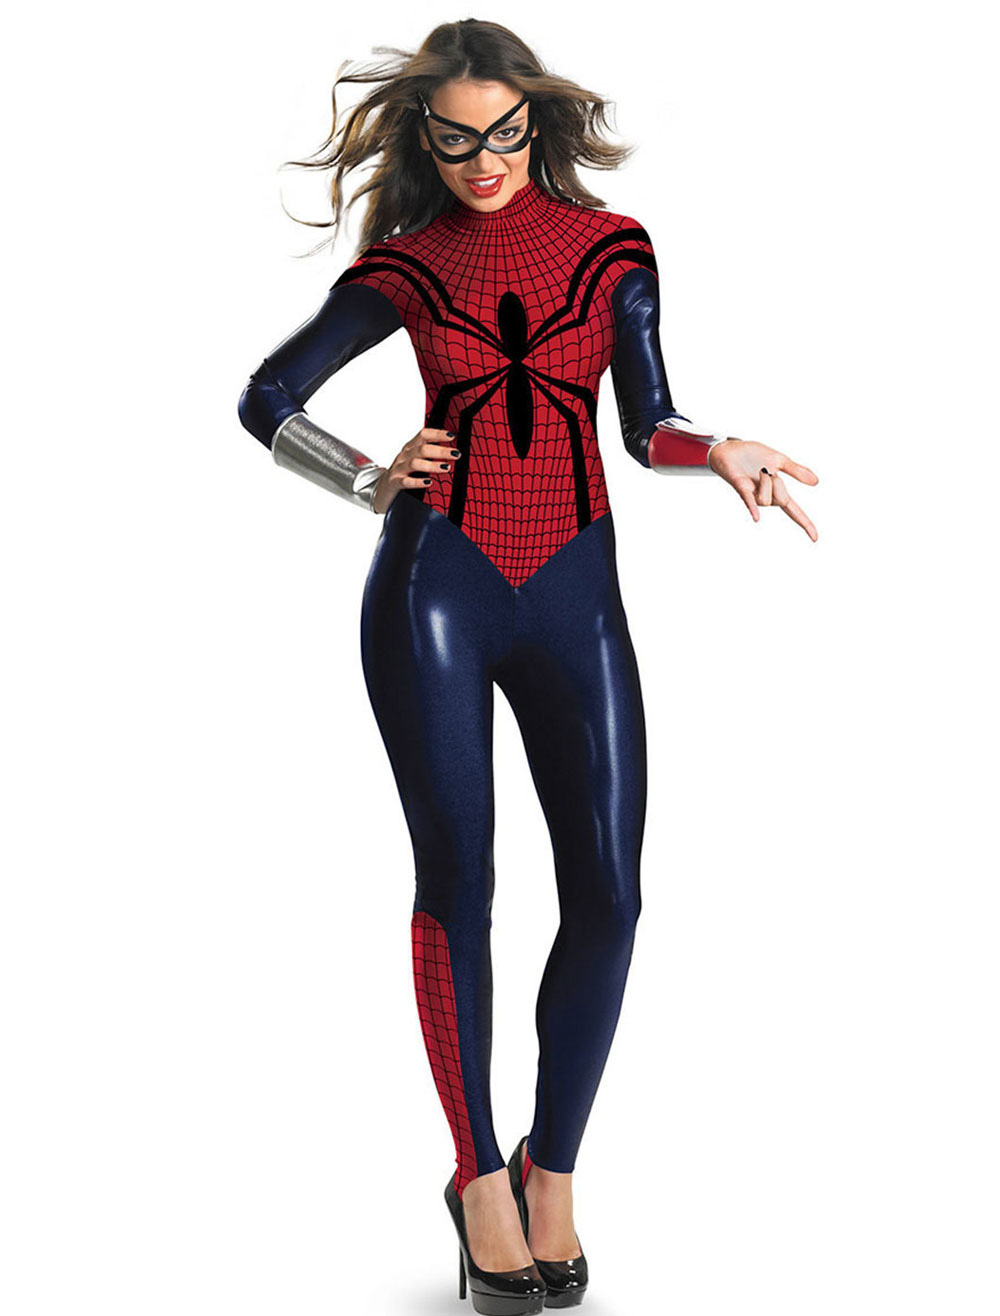 Женский костюм Человека-паука, комбинезон на Хэллоуин, наряд.